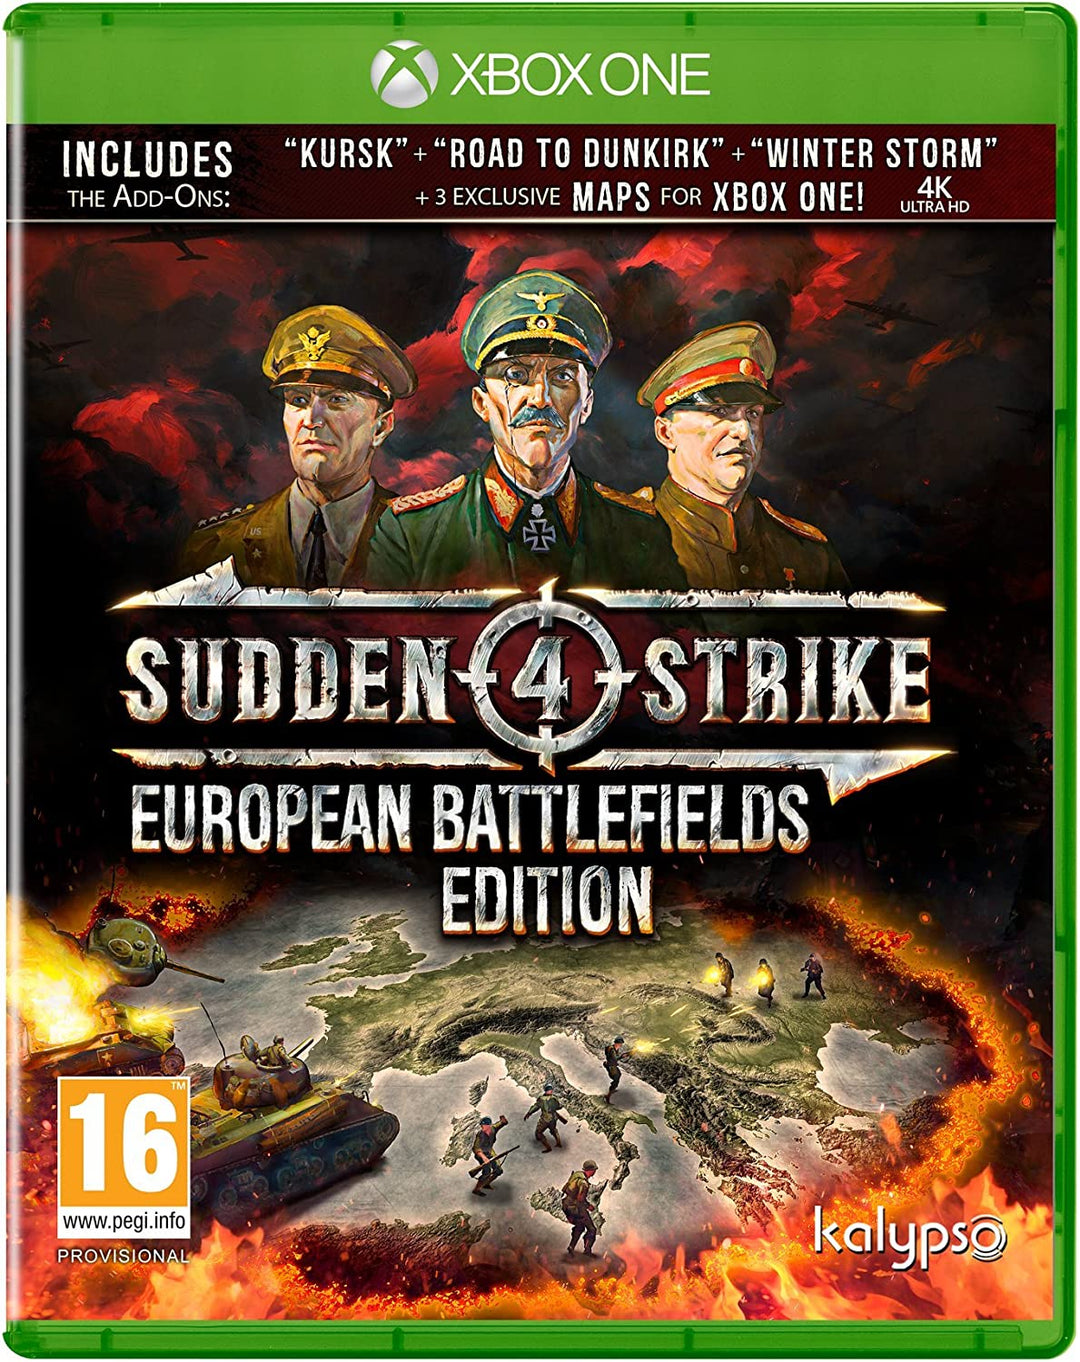 Sudden Strike 4 European Battlefields Edition (Xbox One)